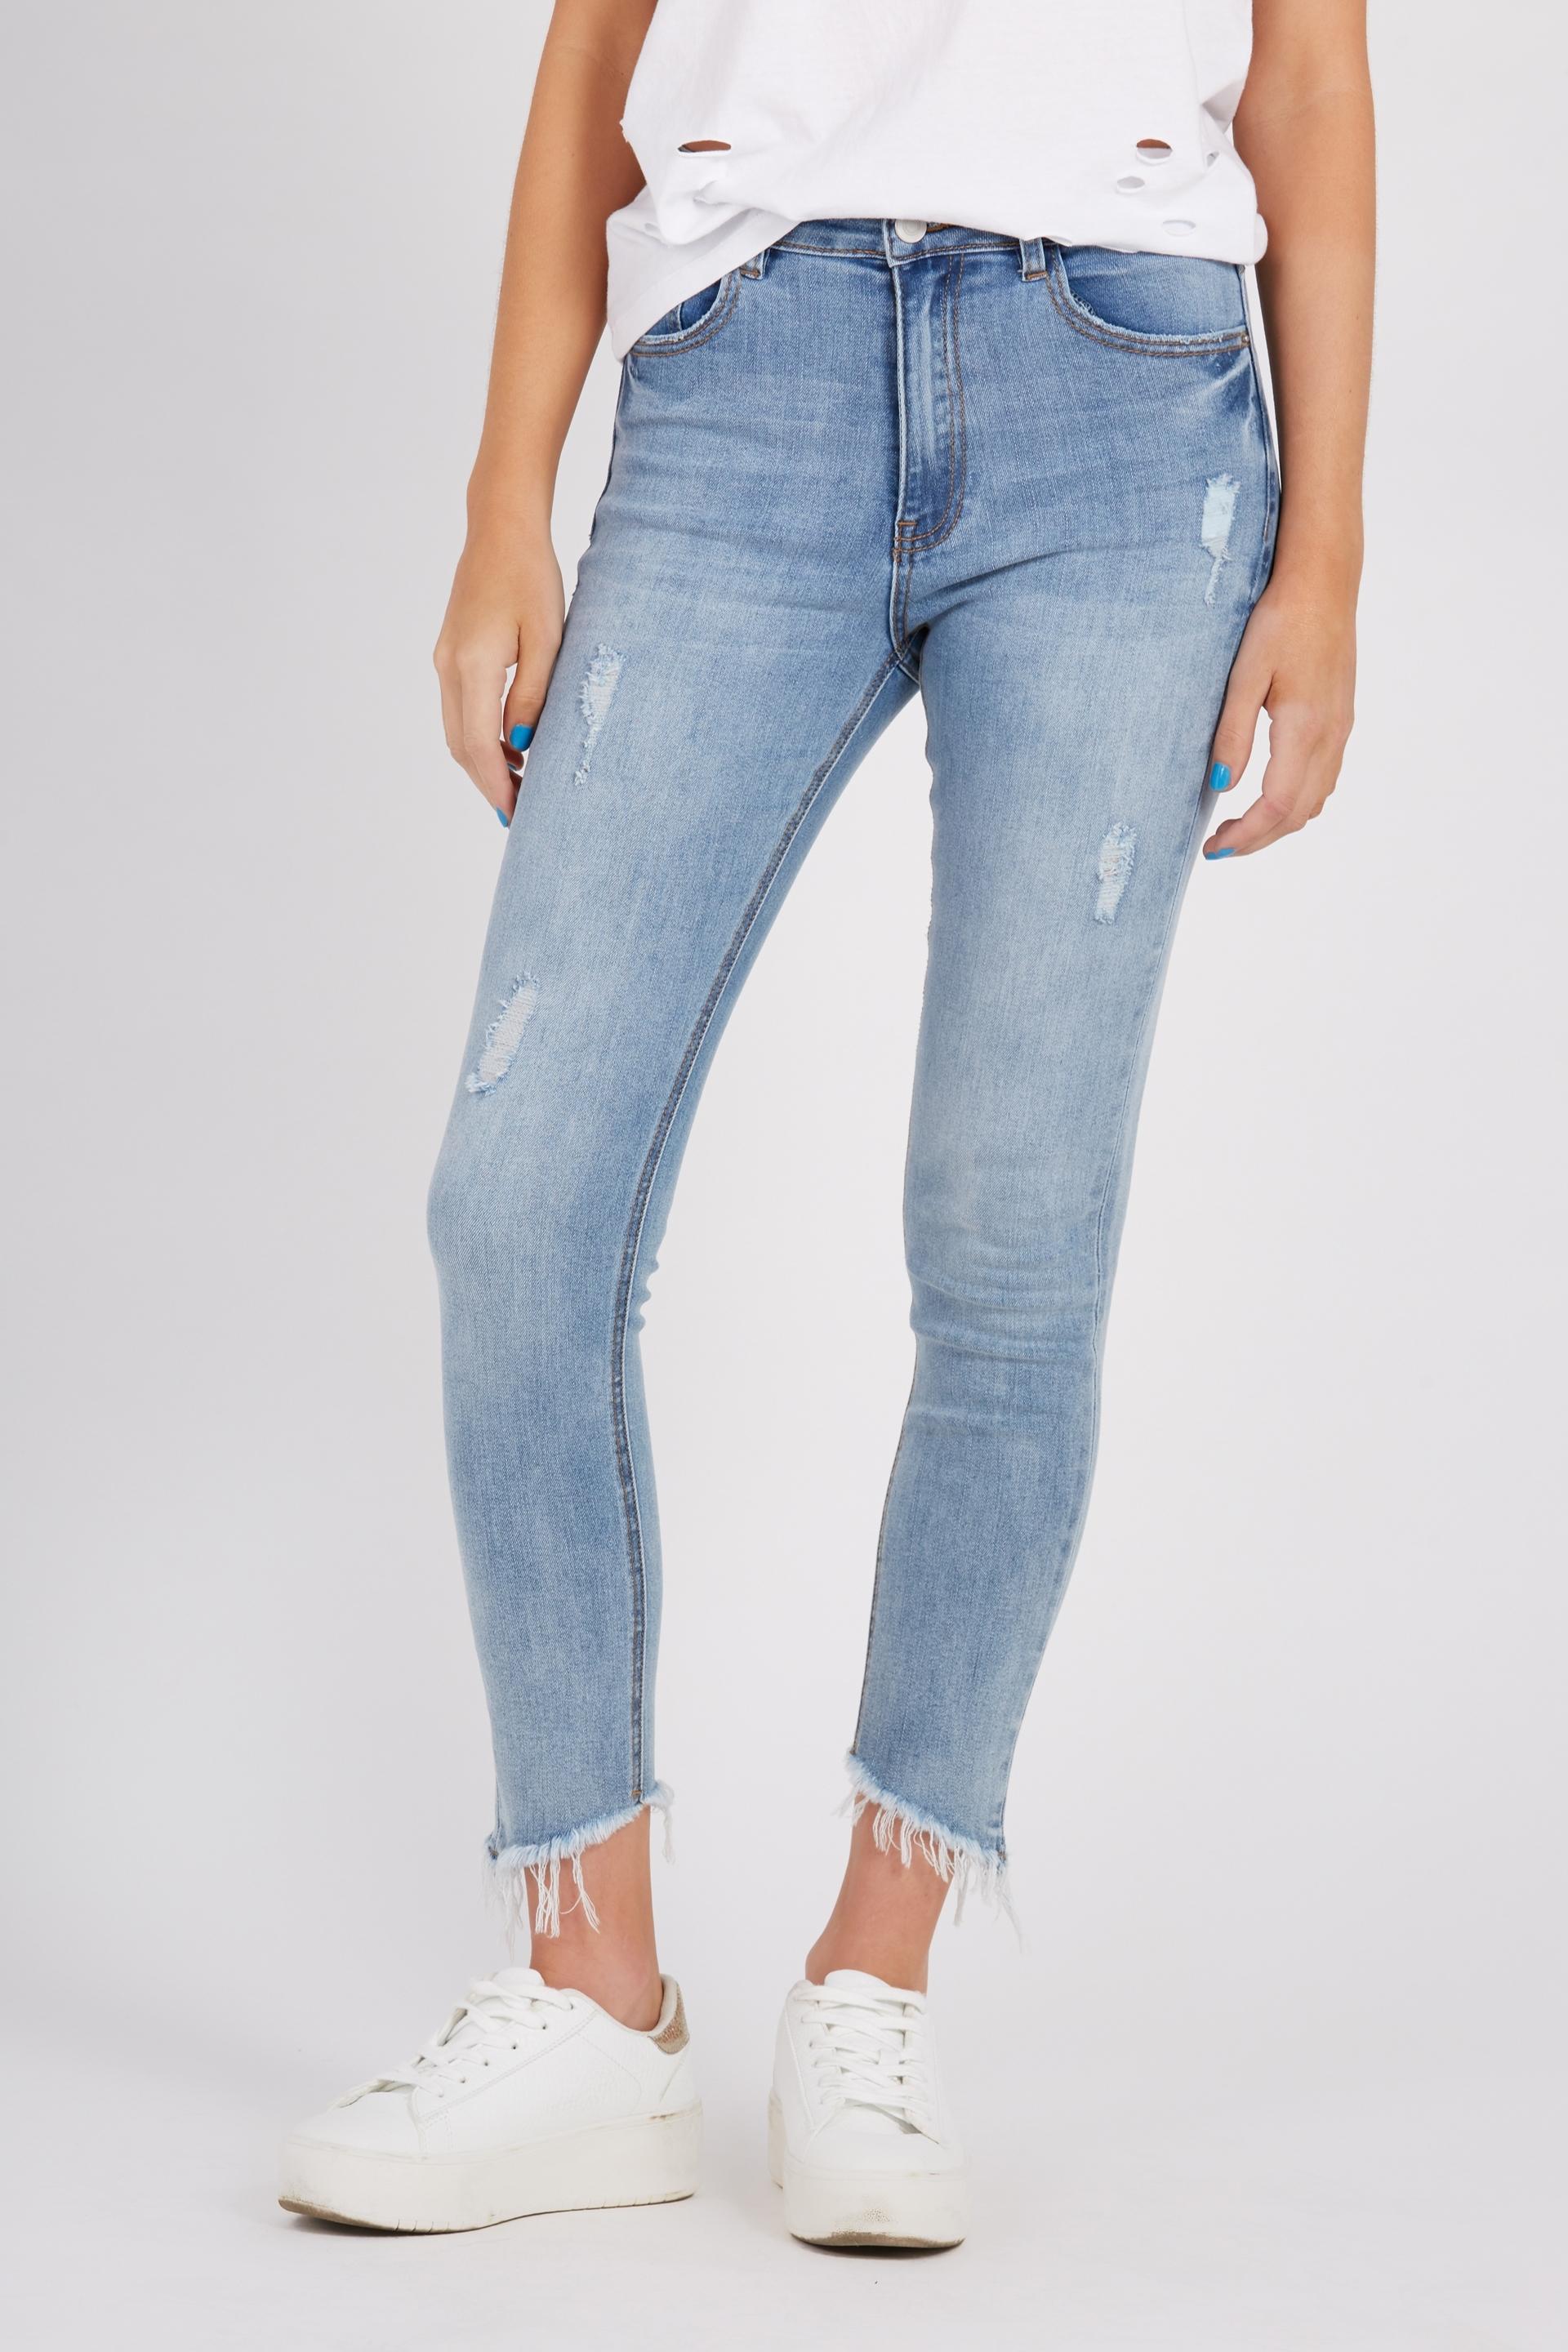 The classics crop fringe jean - blue Supré Jeans | Superbalist.com